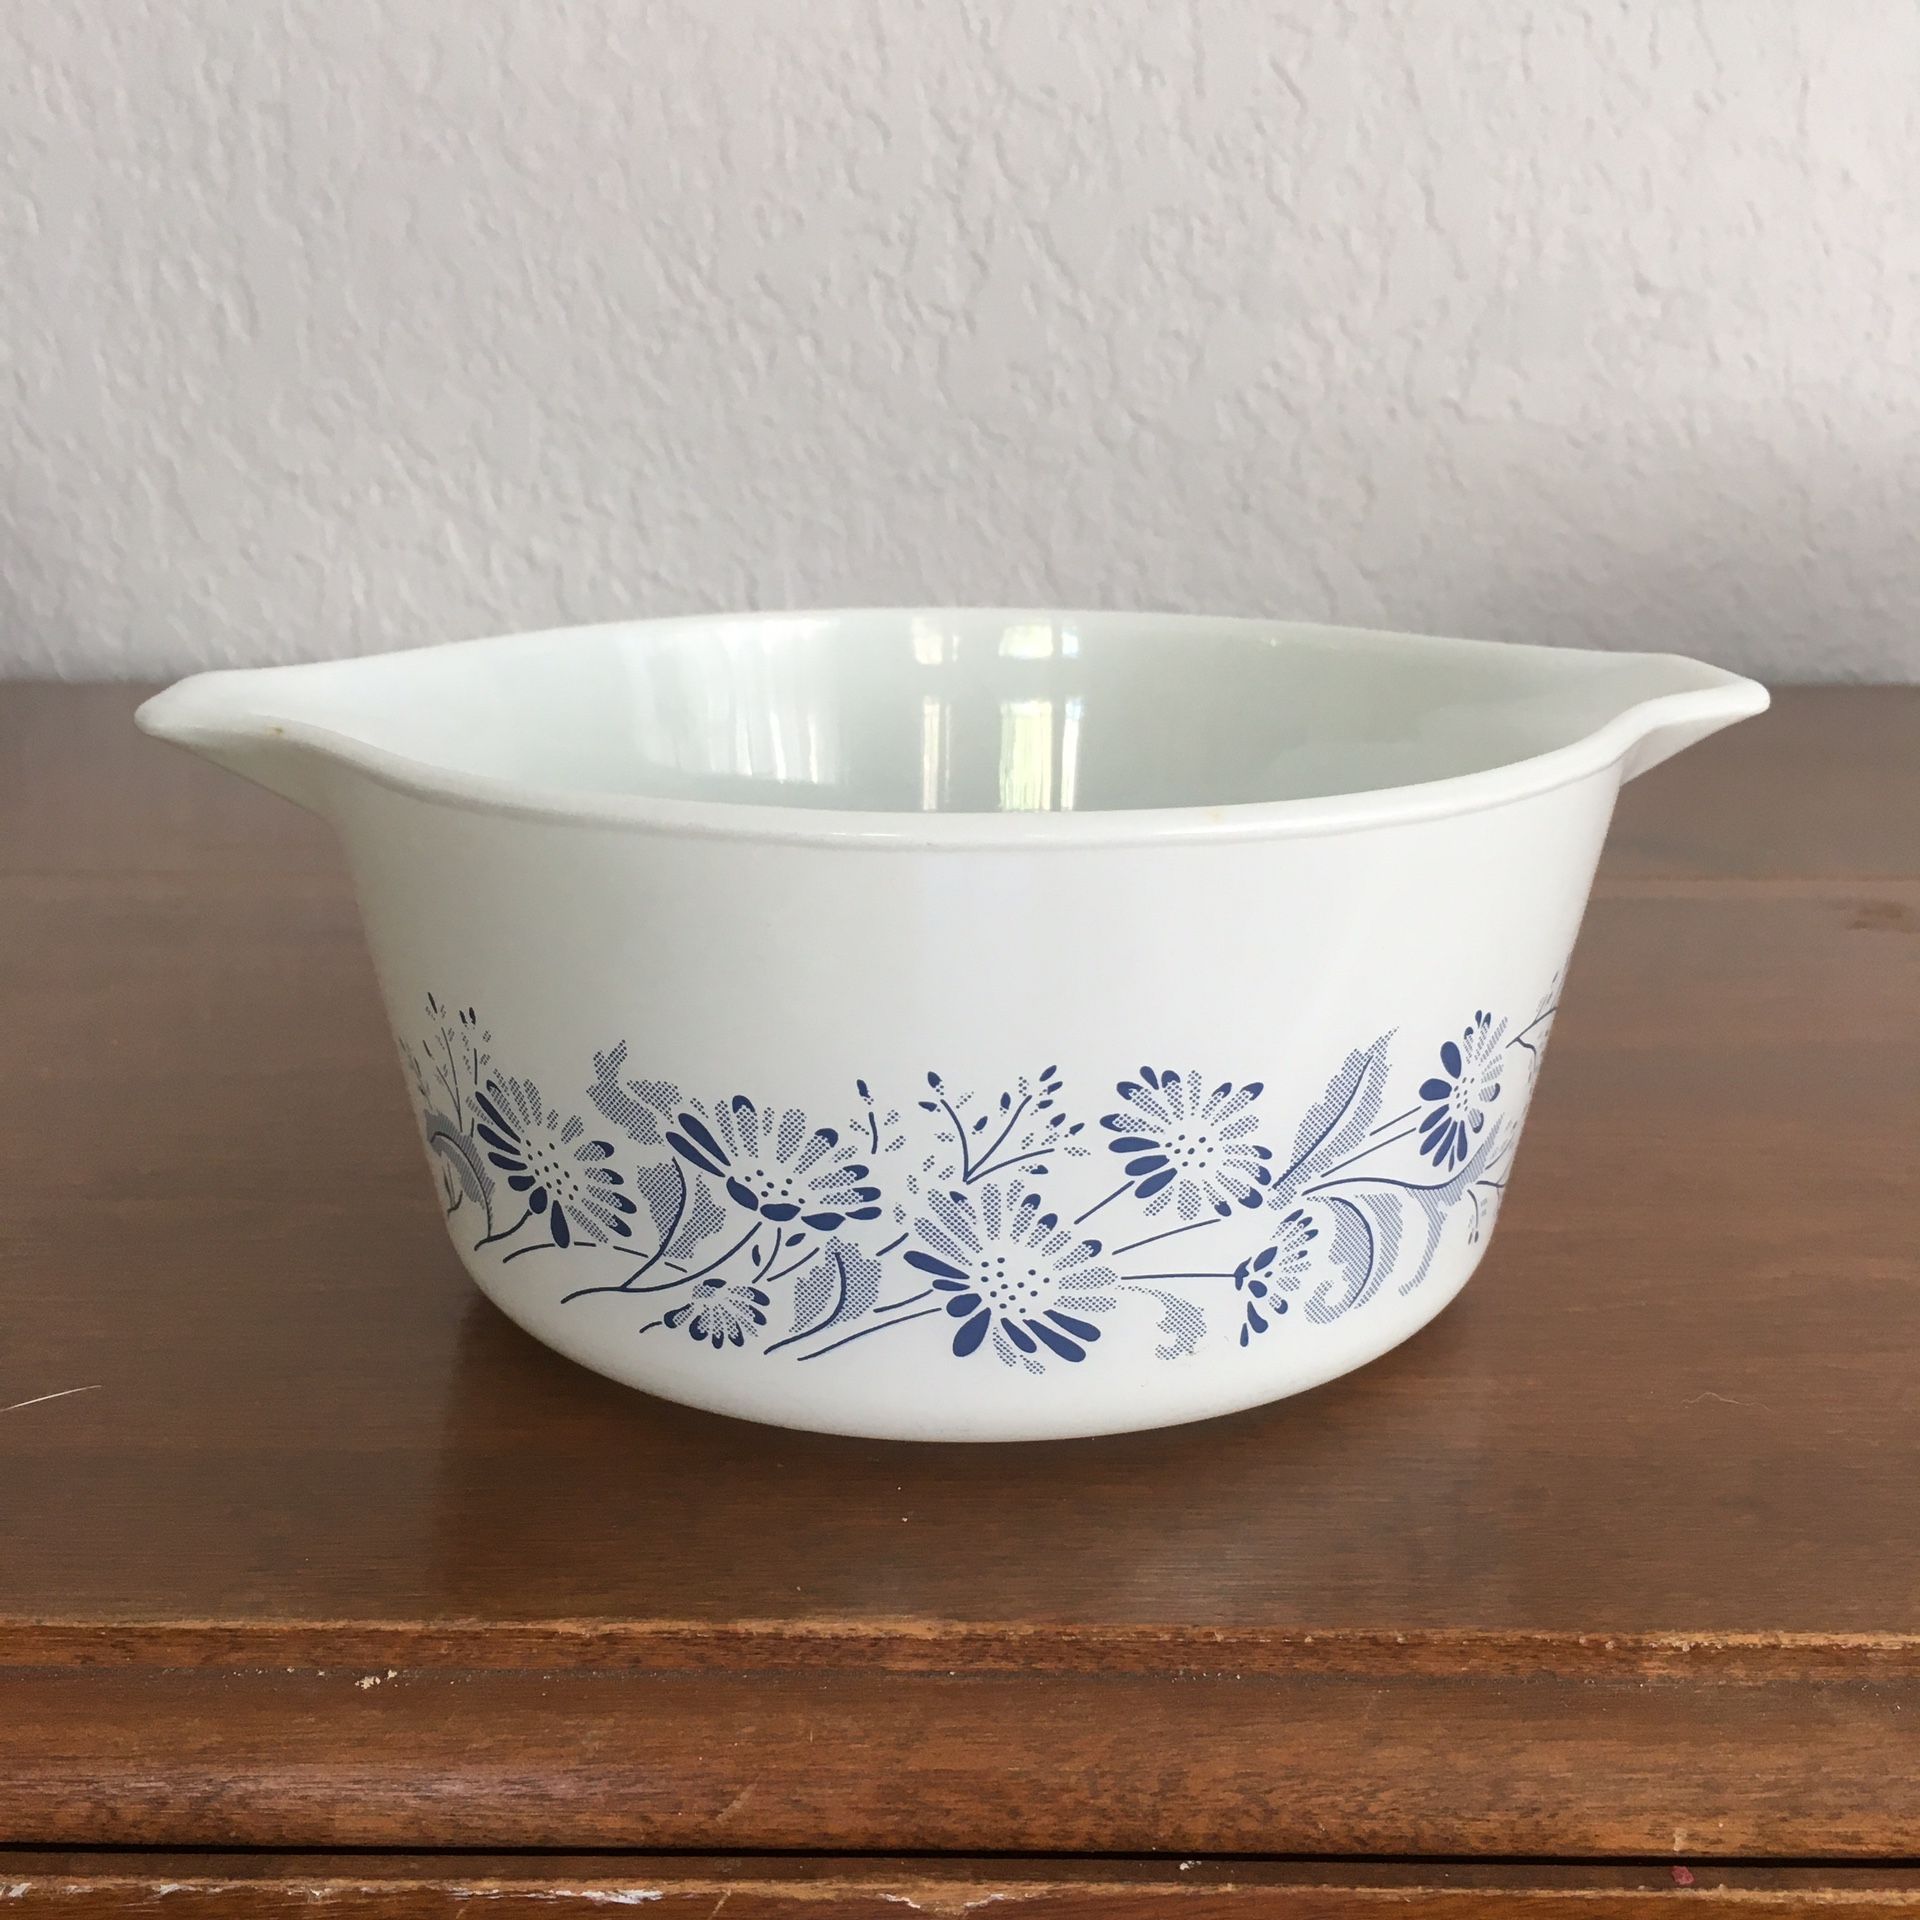 Pyrex bowl, colonial mist design, 1 1/2 quart size